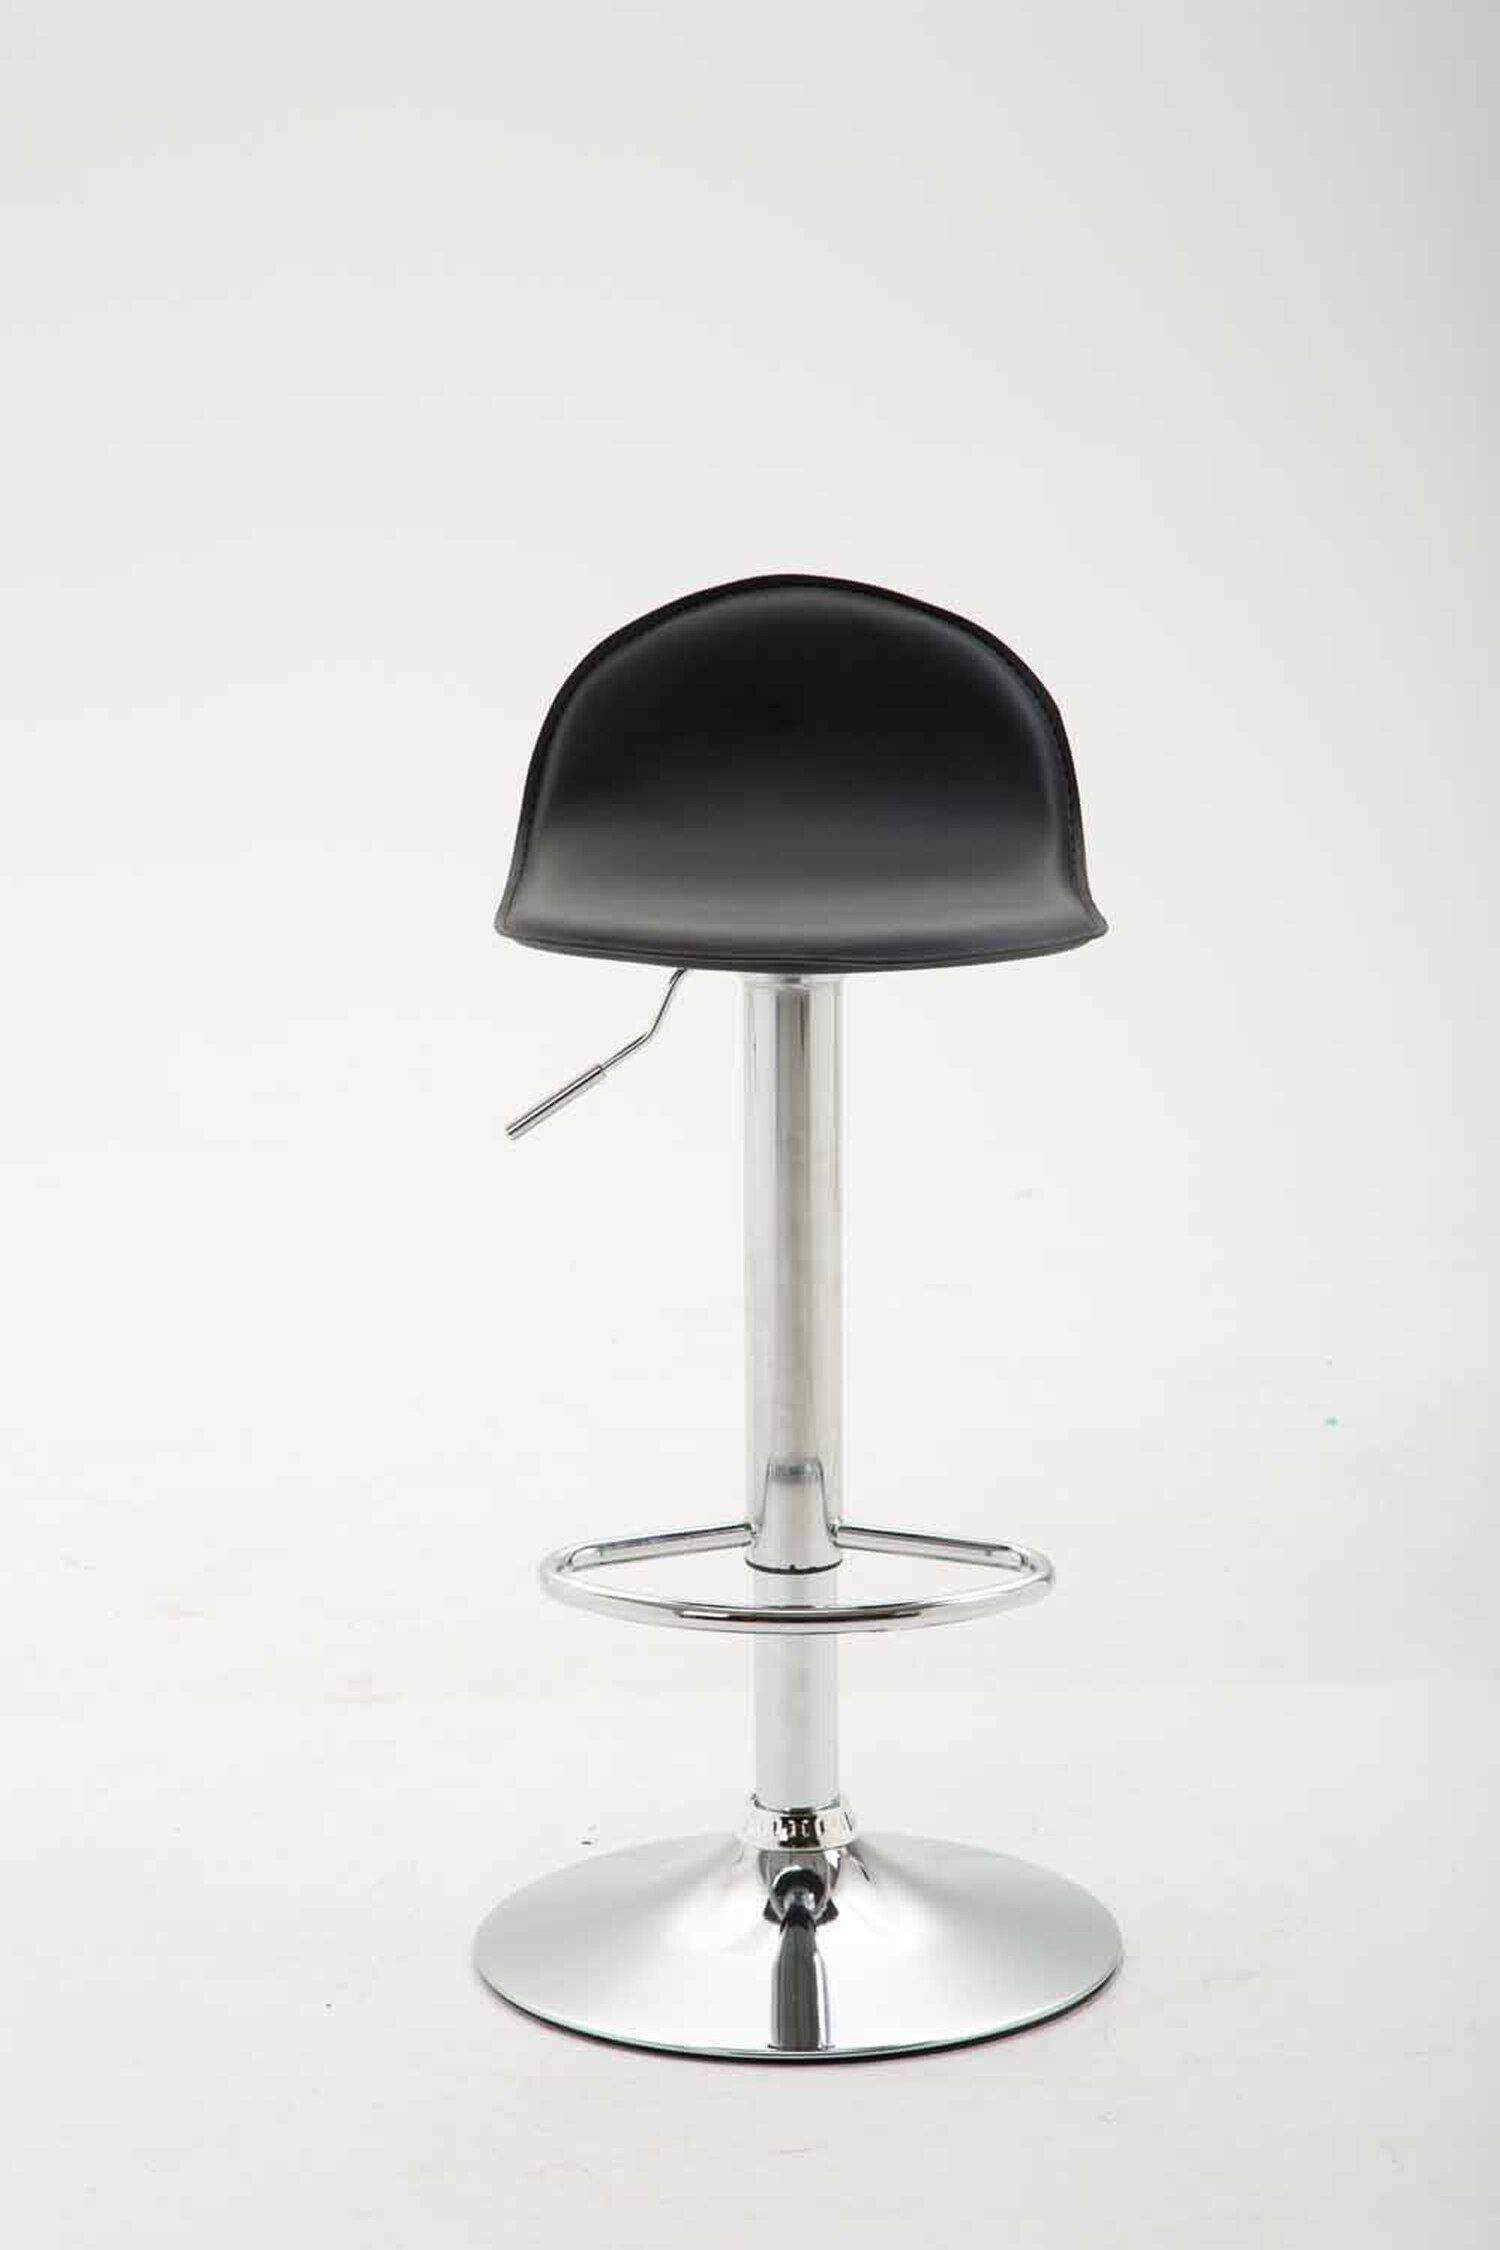 TPFLiving Barhocker Gestell: für Hocker & - (mit und Rückenlehne 360° Küche), Schwarz drehbar Lana chrom- Kunstleder hoher - Theke Fußstütze Sitzfläche: Metall